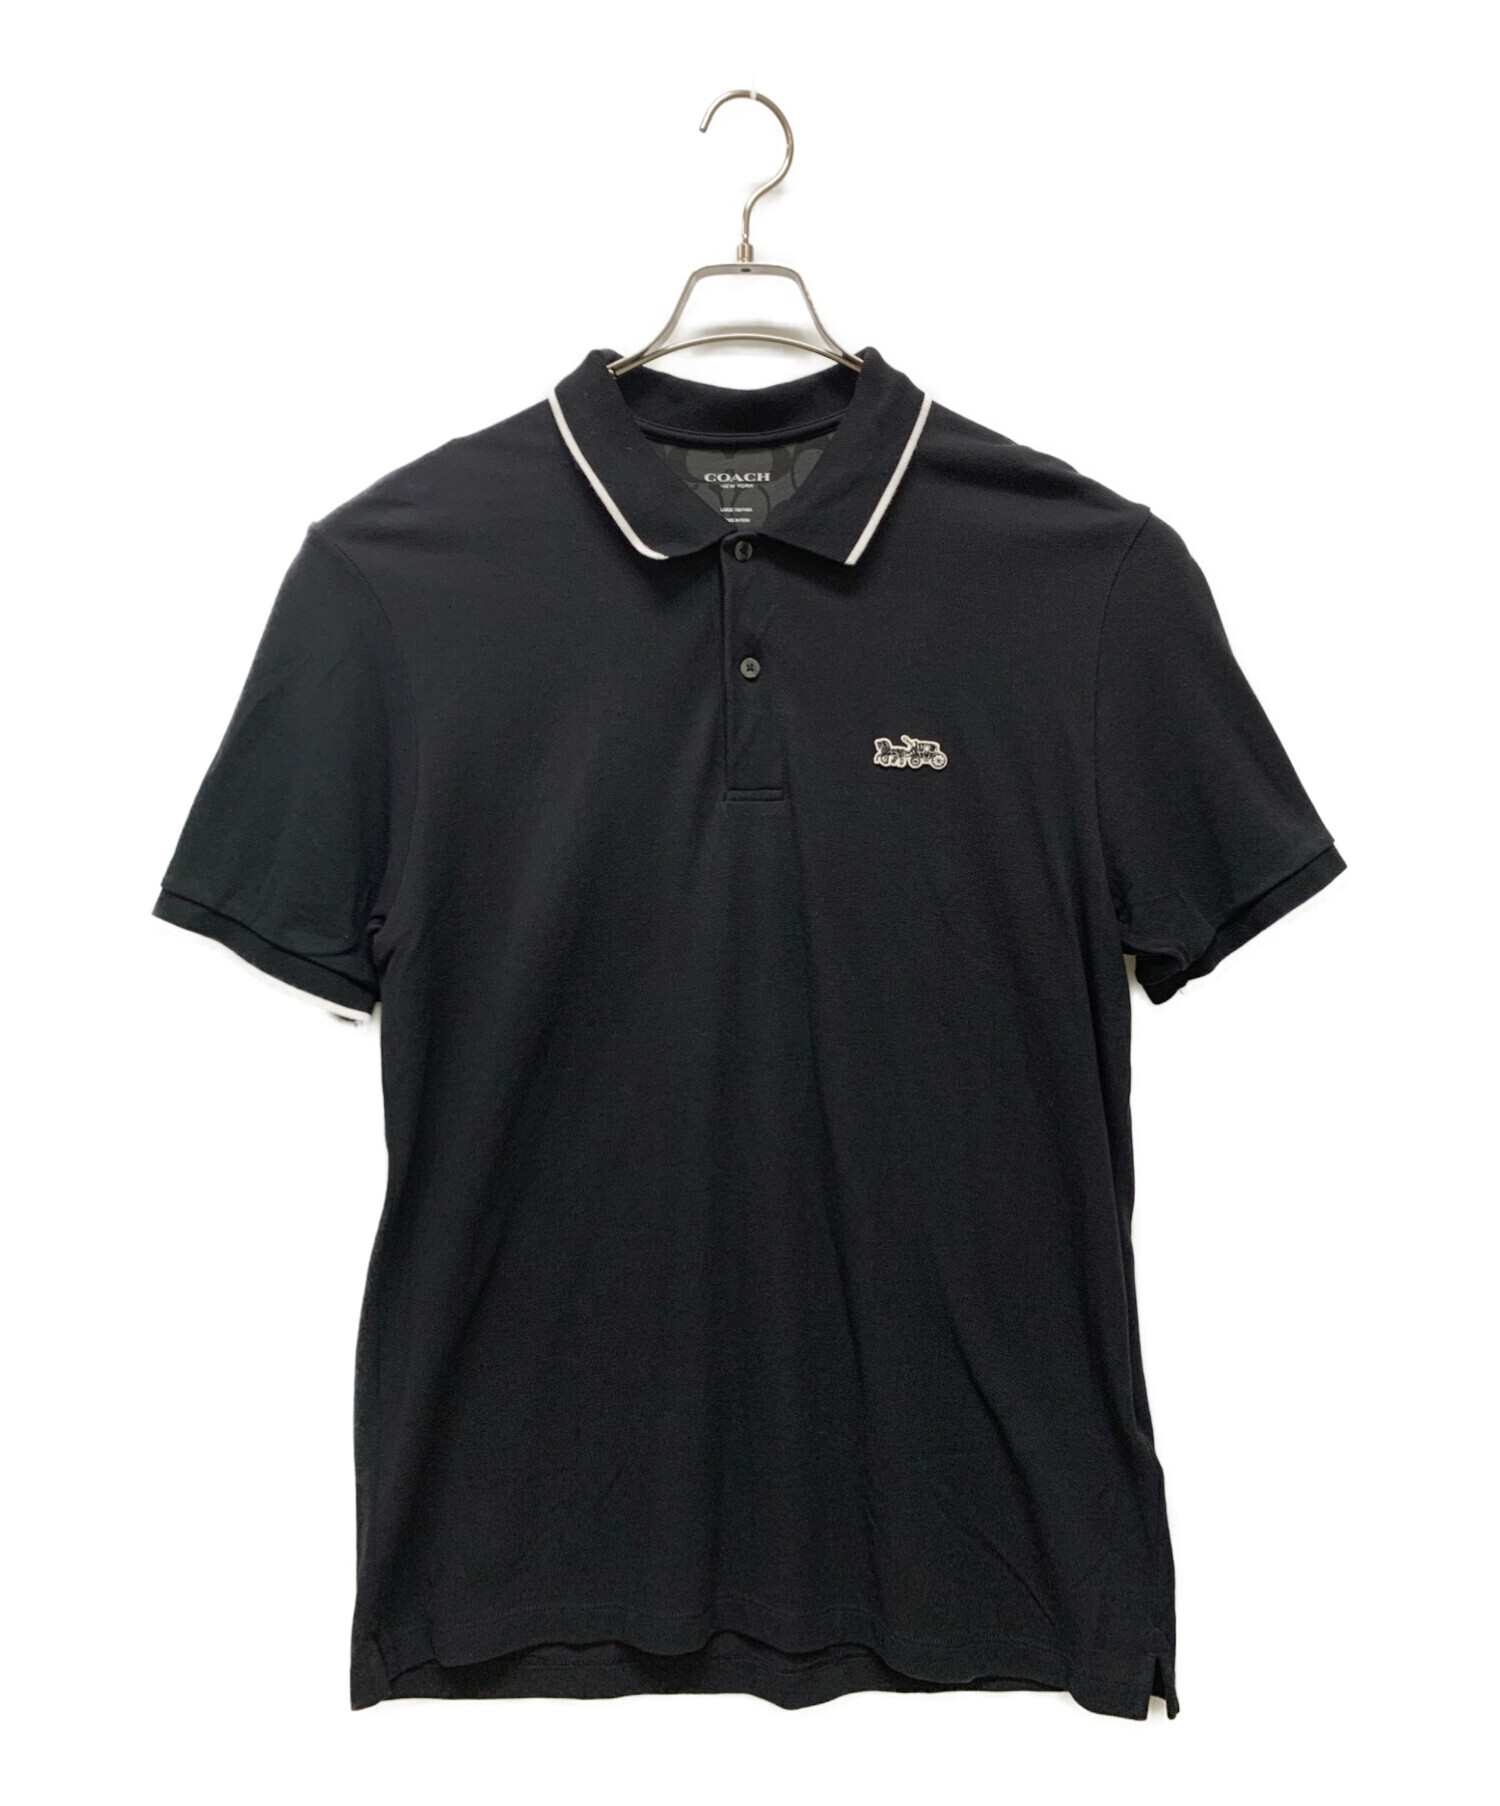 COACH (コーチ) ポロシャツ ブラック サイズ:L